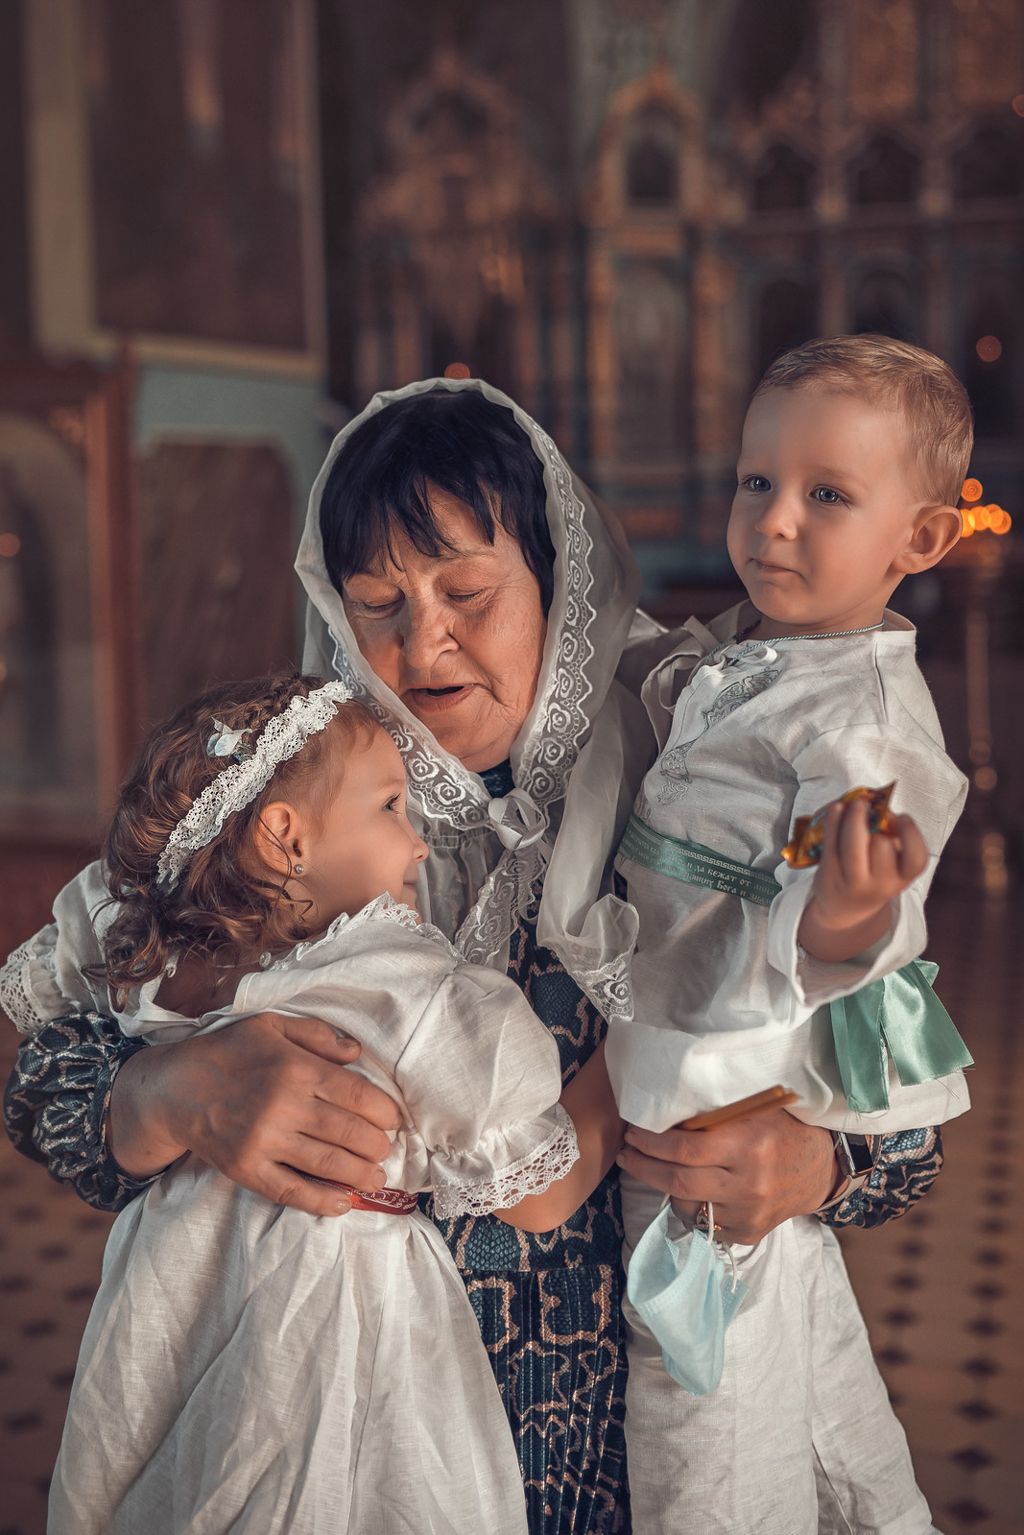 Таинство крещения в Обуховском храме Ростовской области, фотограф Ирина Доценко